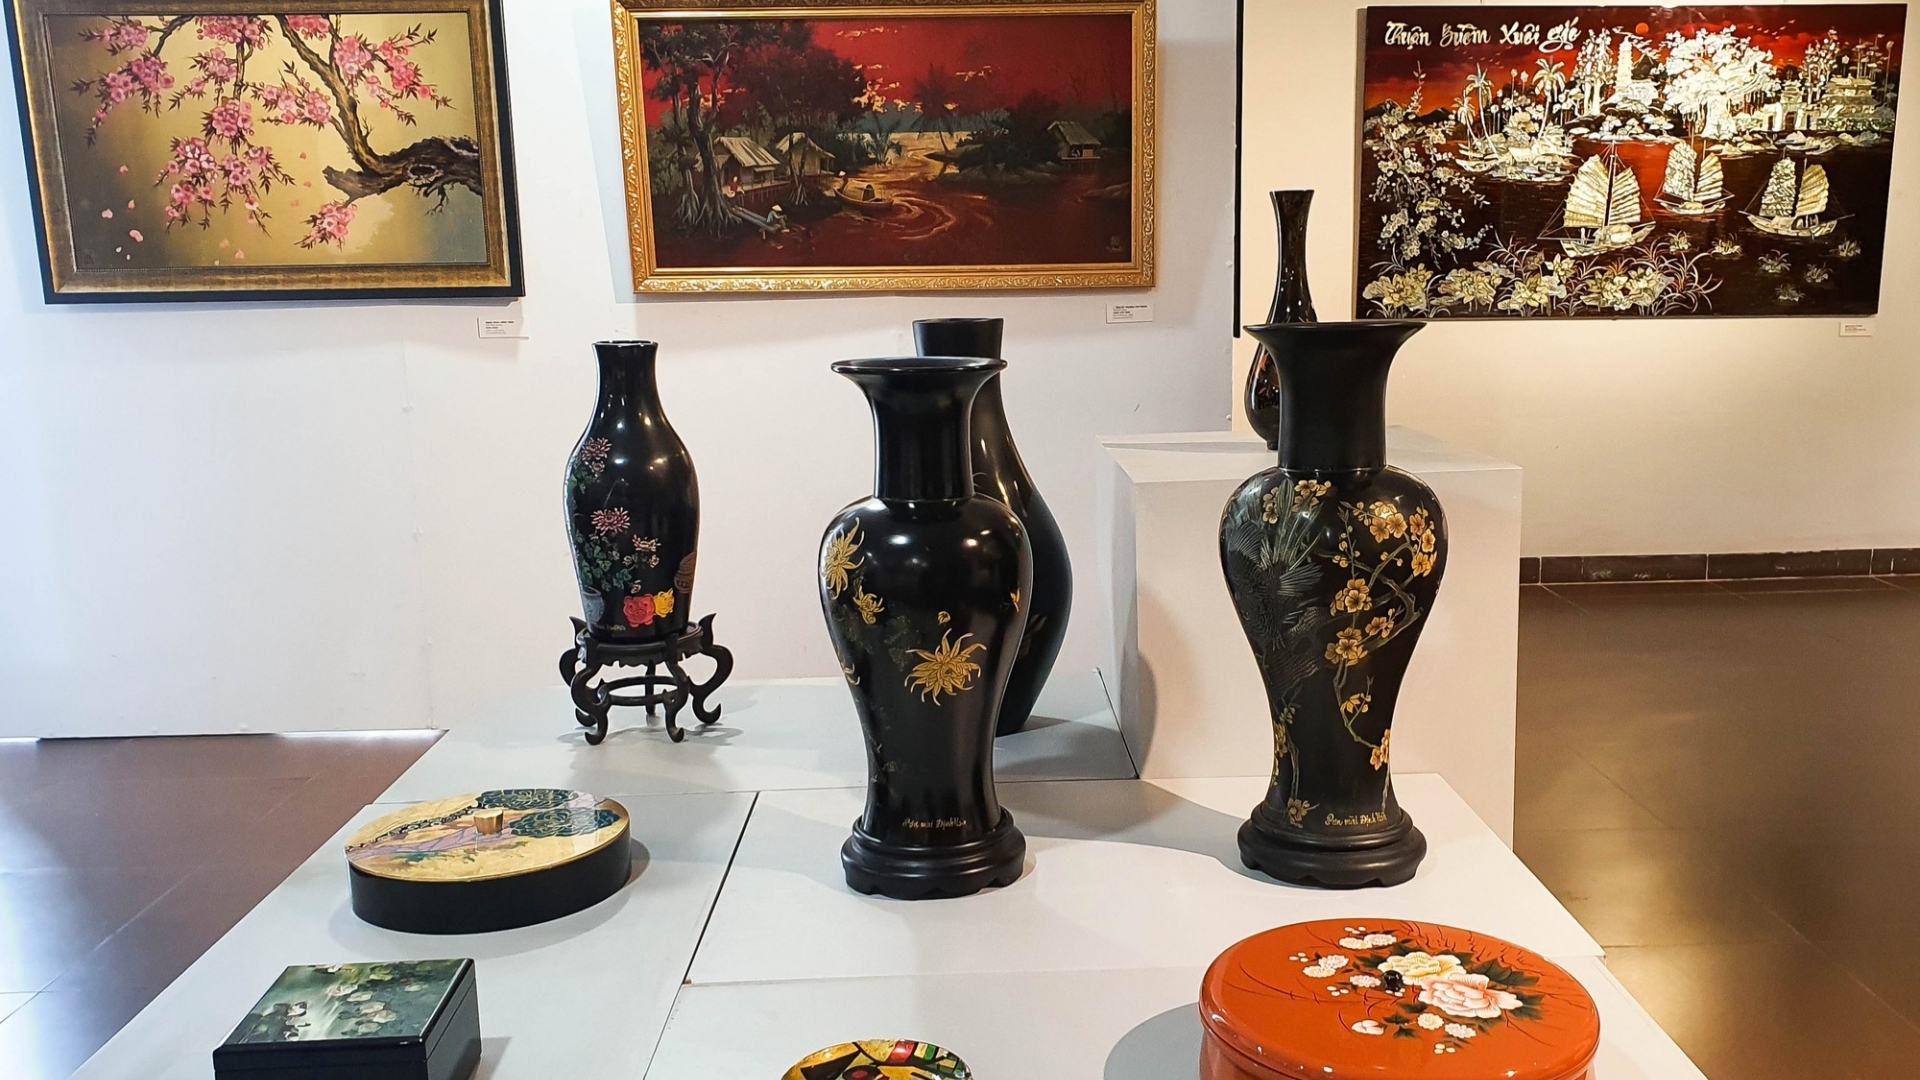 越南磨漆产品展览会的100多件磨漆产品